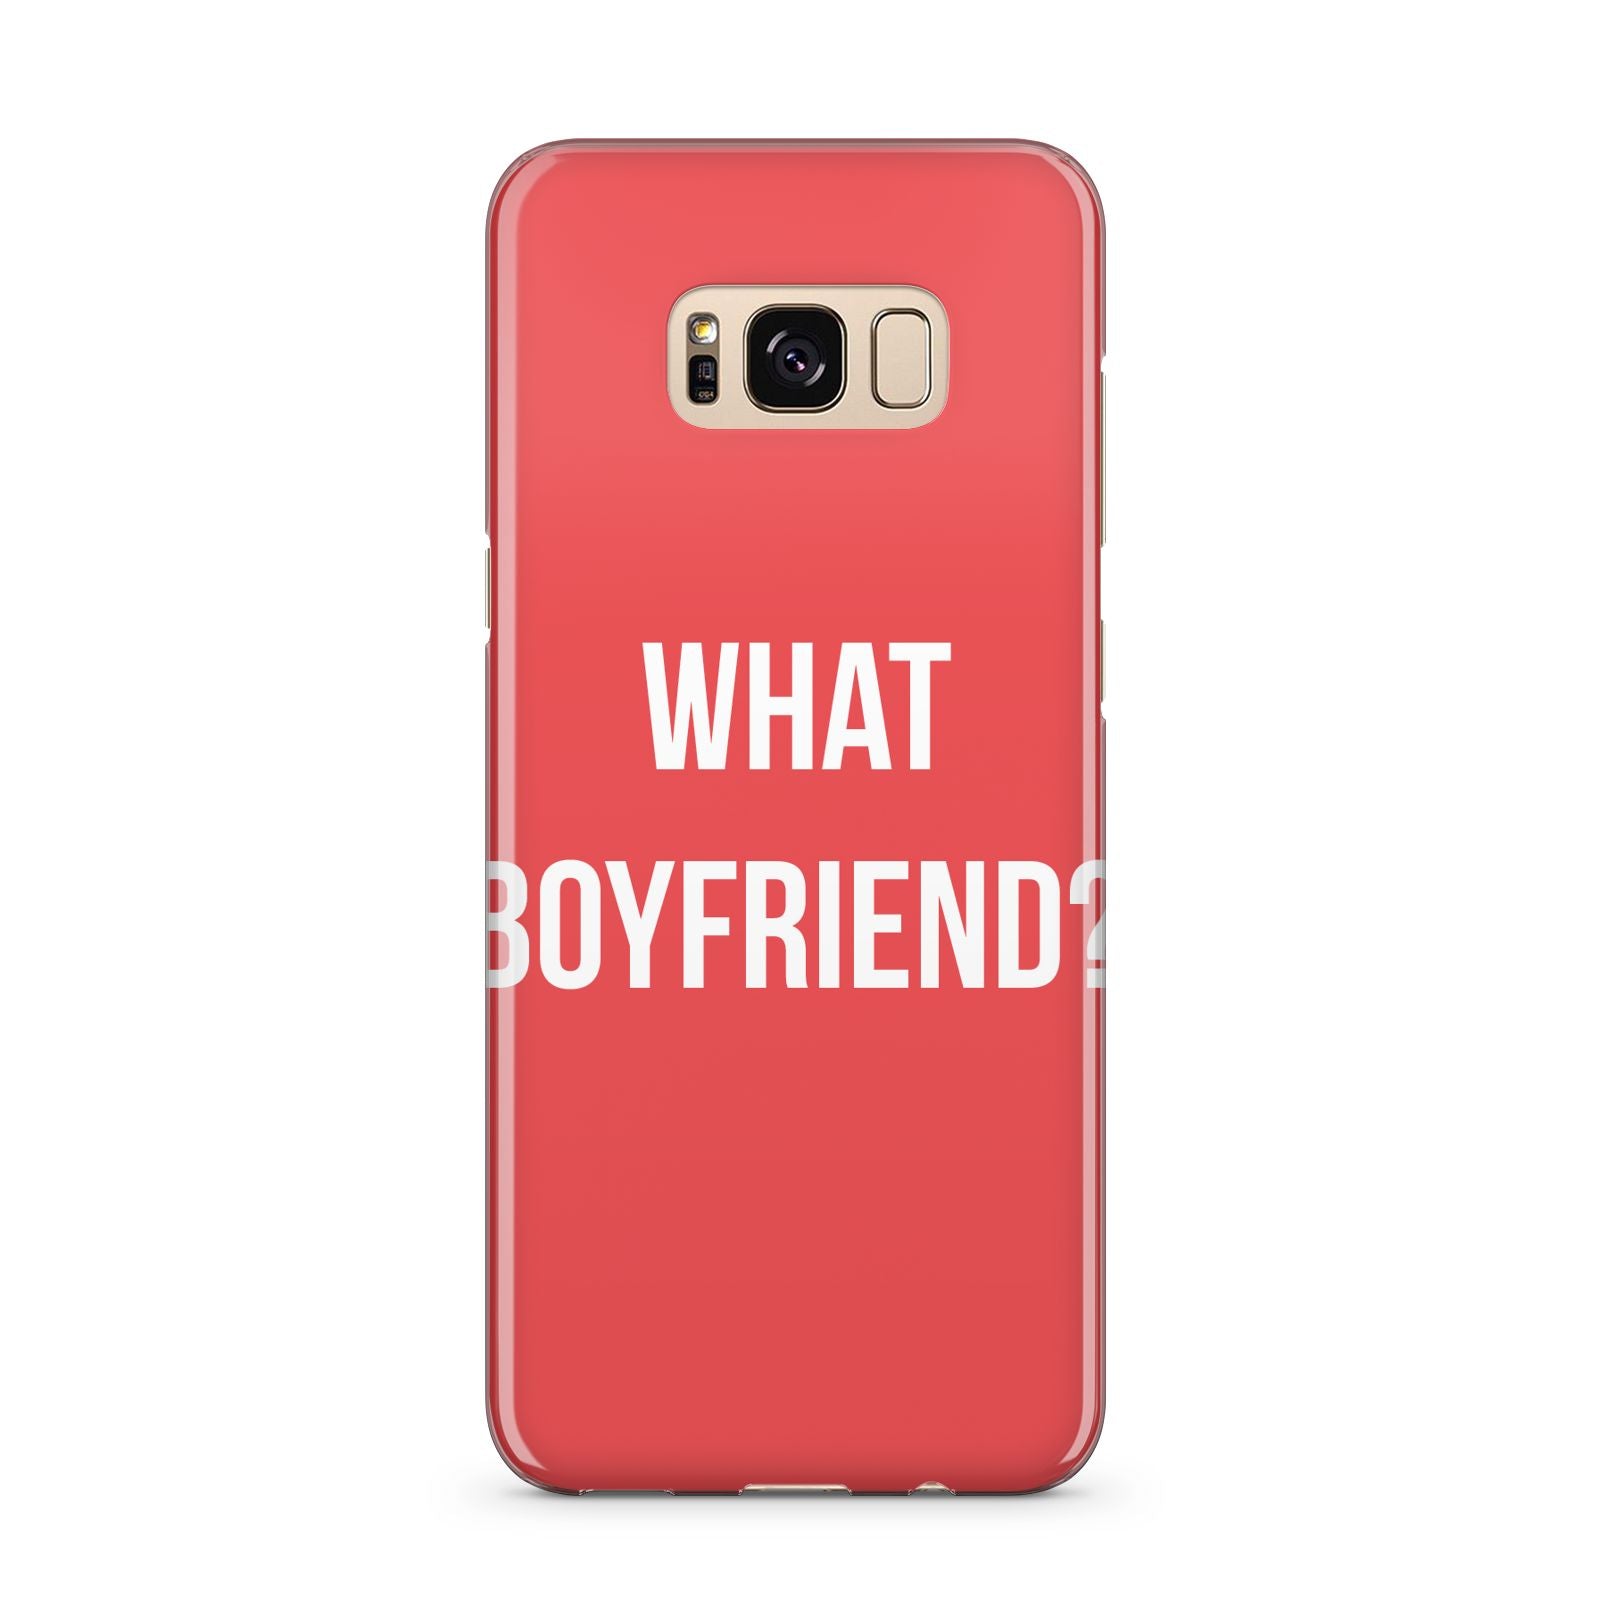 What Boyfriend Samsung Galaxy S8 Plus Case